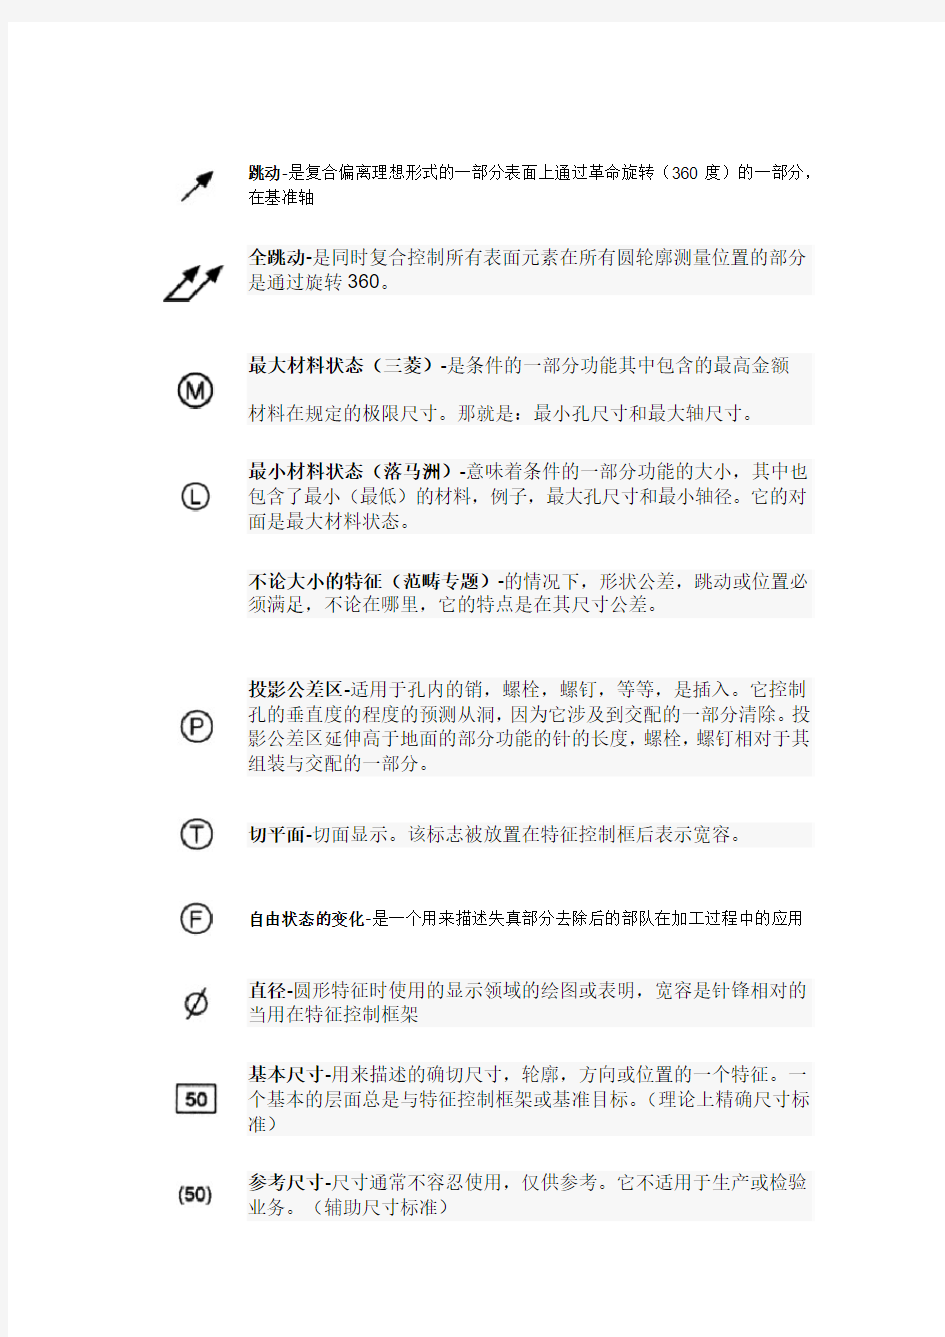 机械图纸中常见的符号及意义(中文)